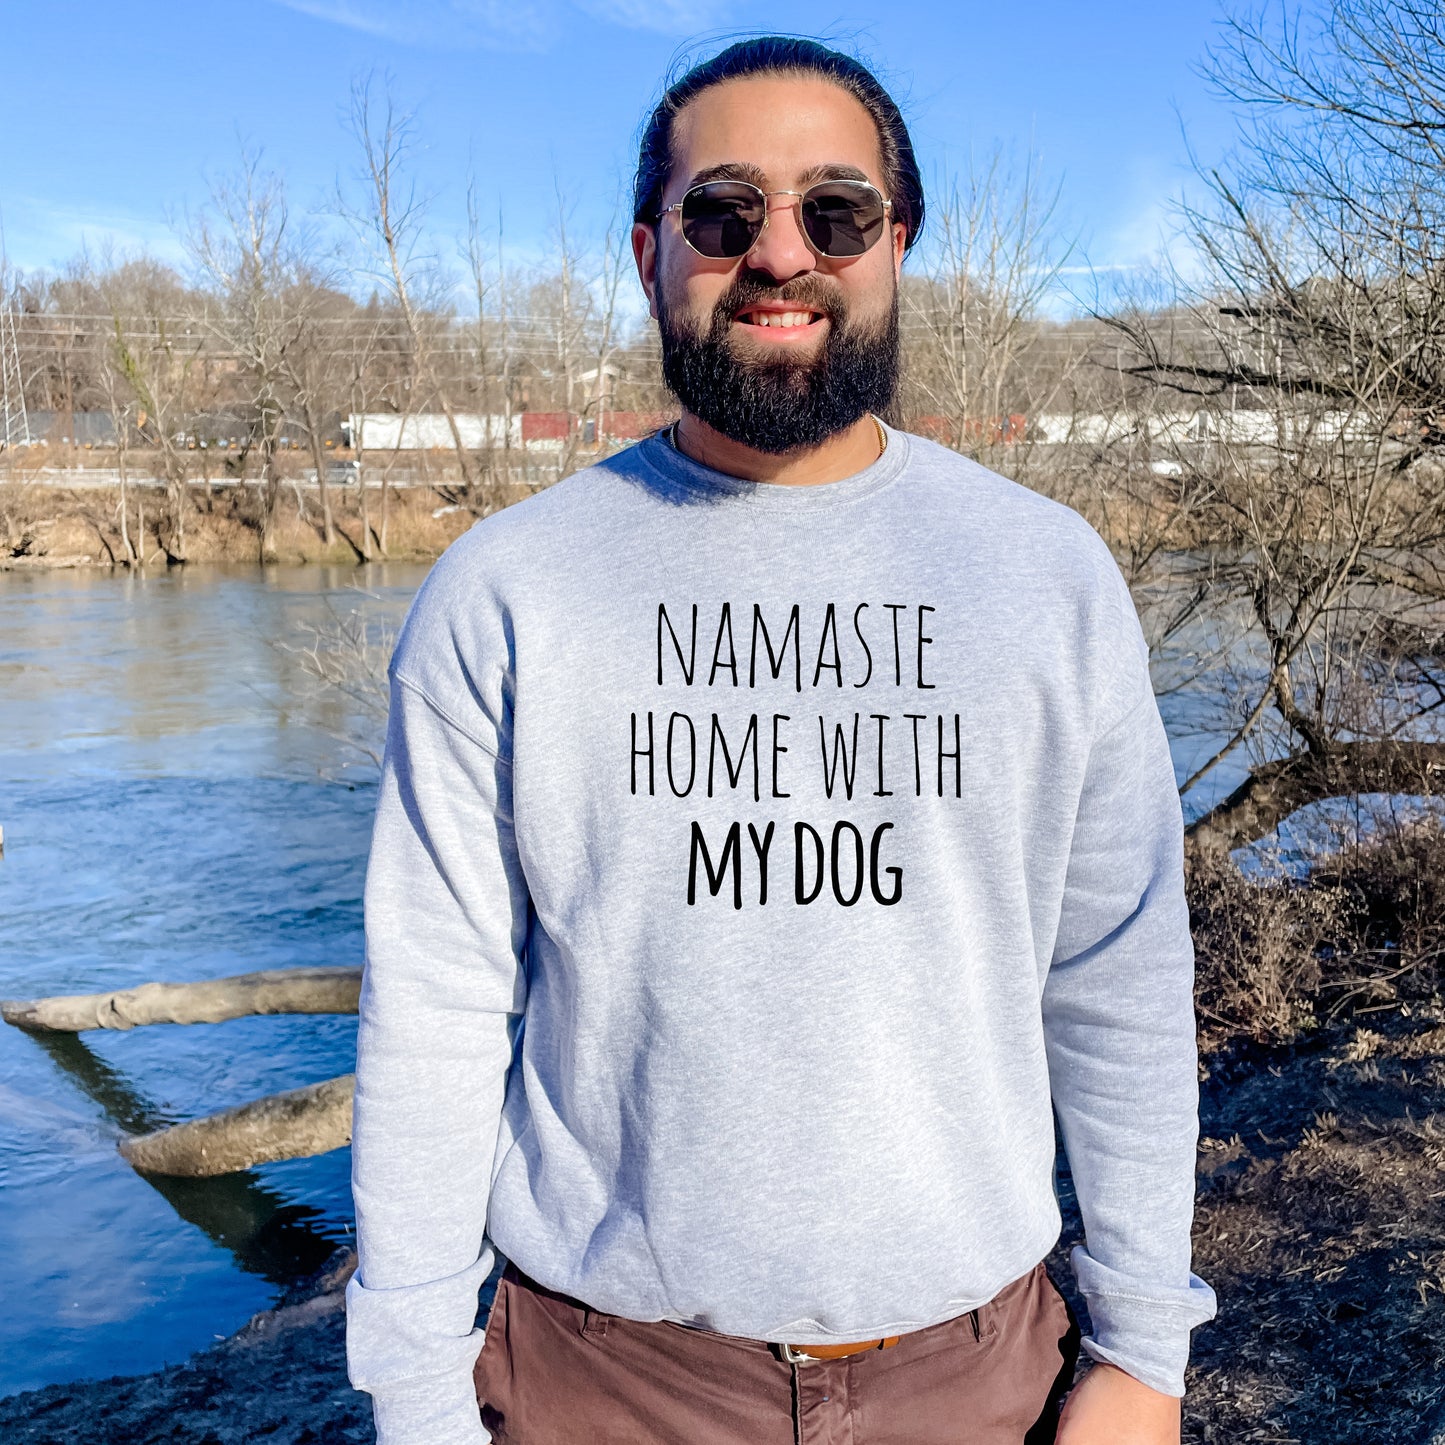 Namaste Home With My Dog - Unisex Sweatshirt - Heather Gray or Dusty Blue